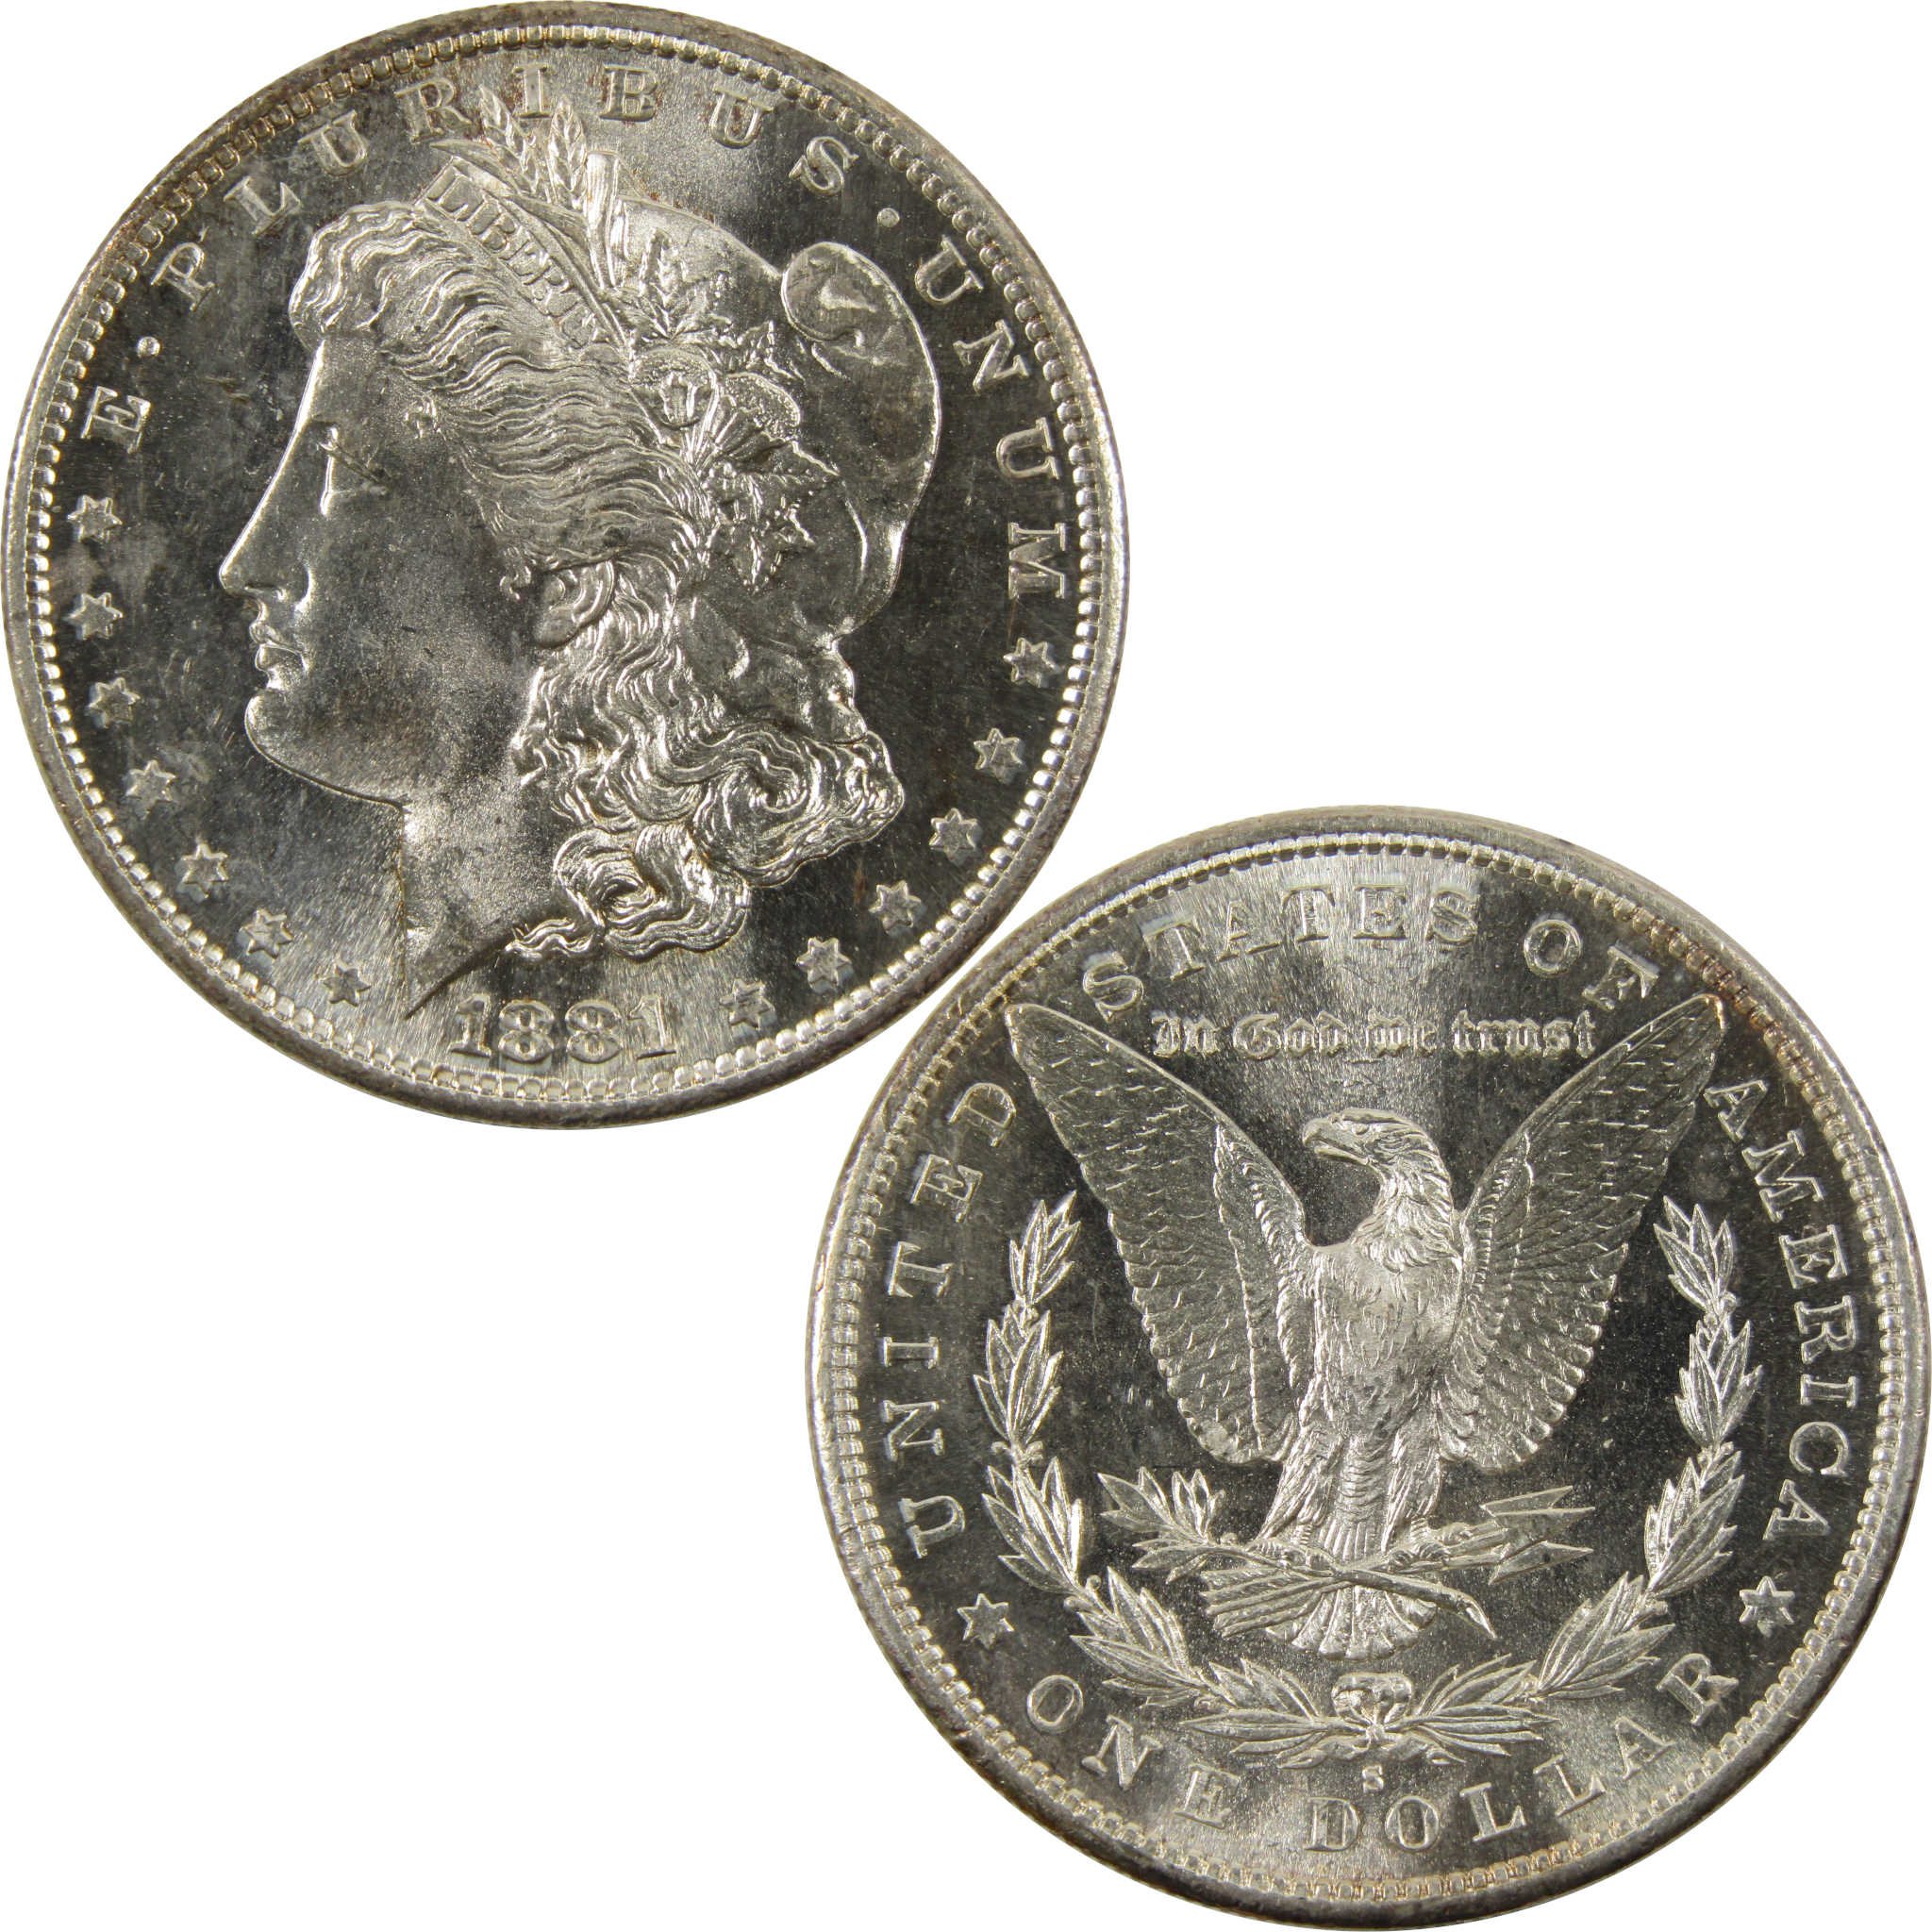 1881 S Morgan Dollar Very Choice BU 90% Silver $1 Coin SKU:I9605 - Morgan coin - Morgan silver dollar - Morgan silver dollar for sale - Profile Coins &amp; Collectibles